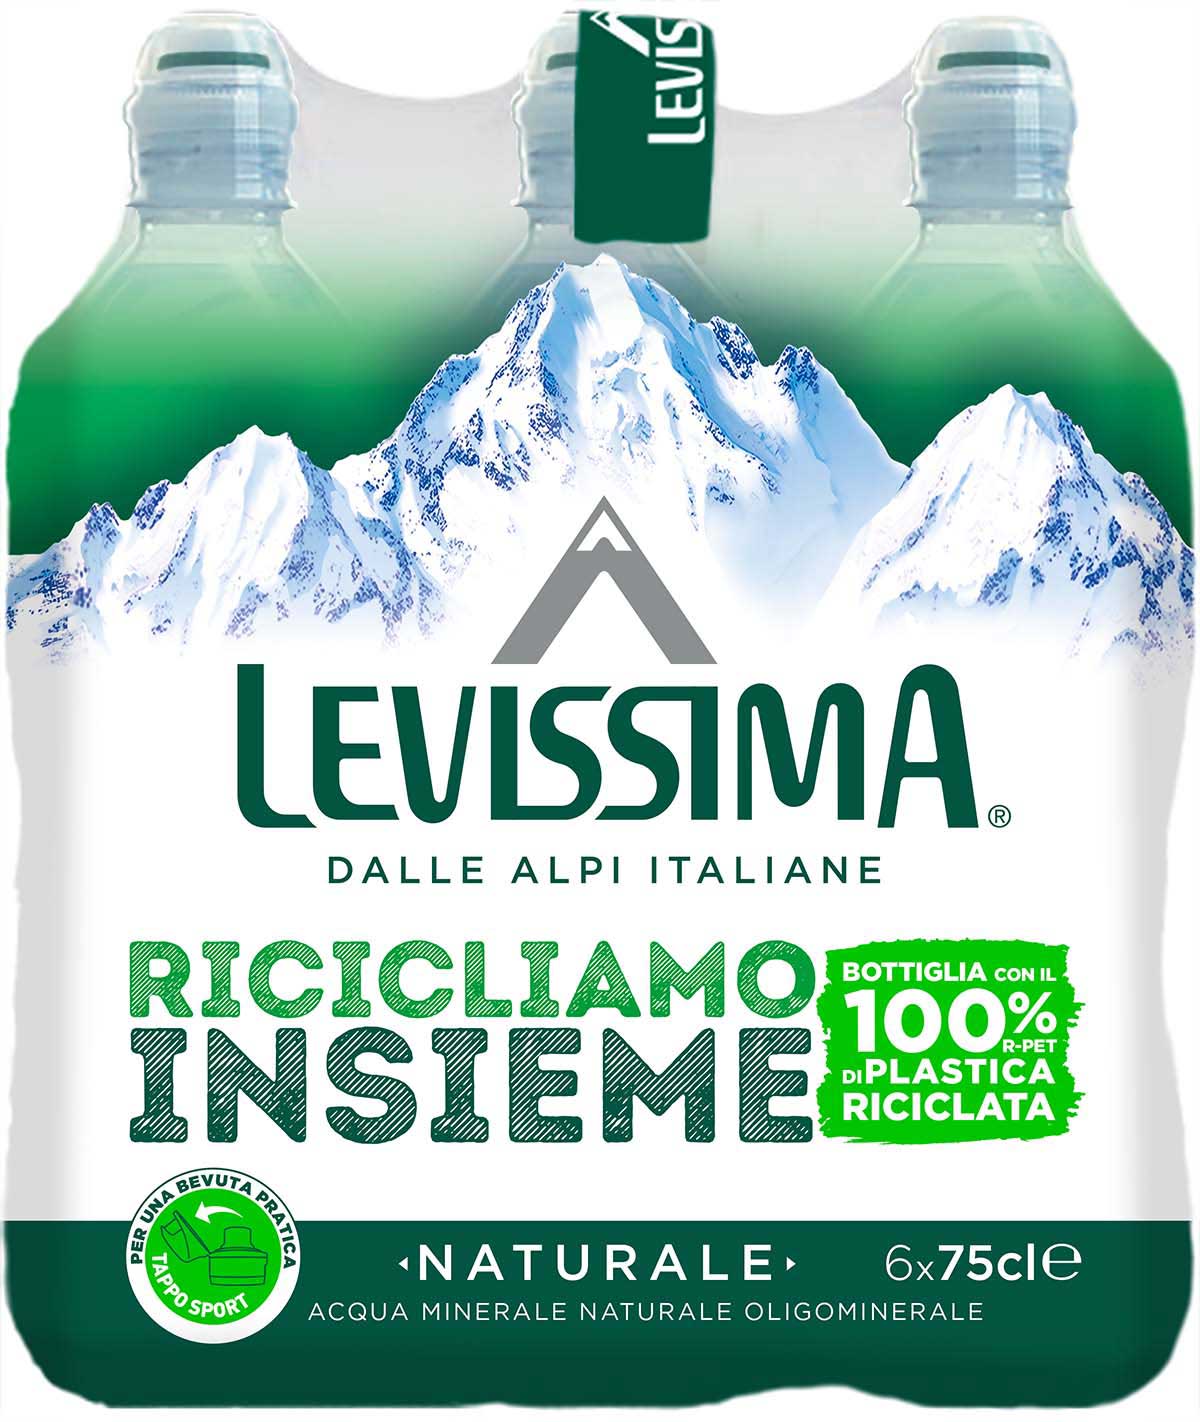 Levissima Acqua Minerale Naturale 75 cl 100% RPET - Fardello